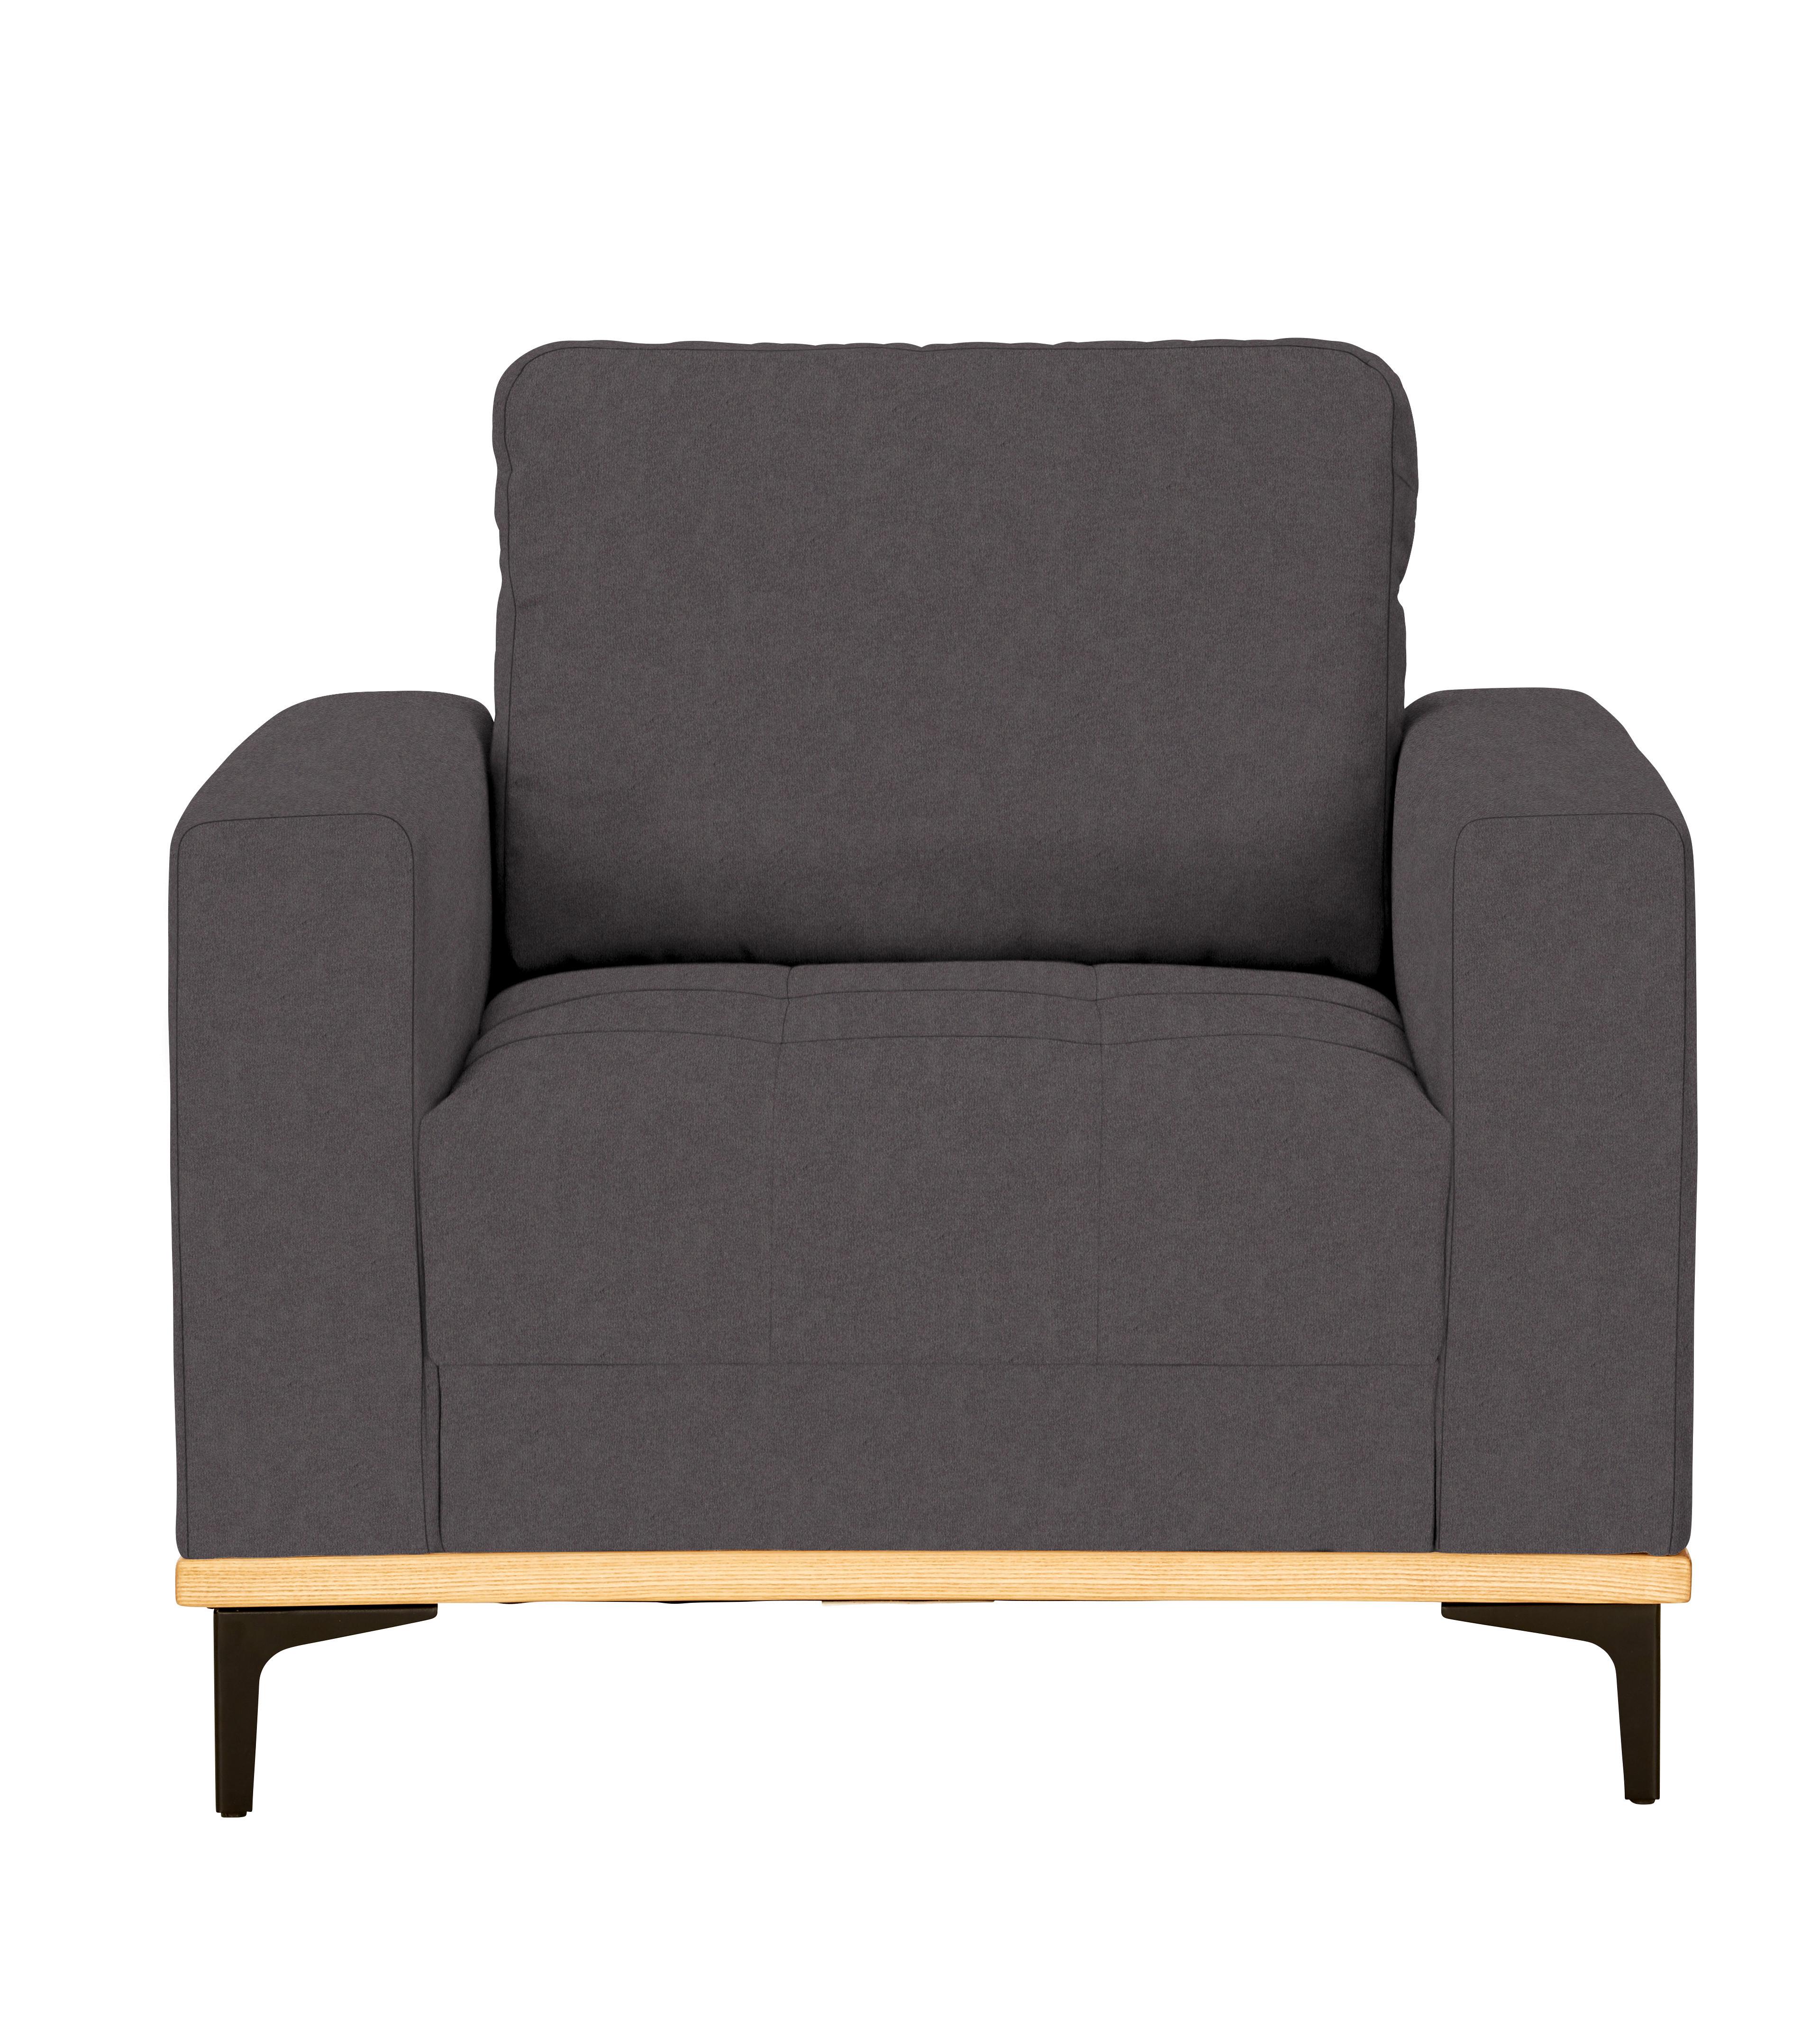 Fotelja Casper - siva/crna, Konventionell, tekstil/metal (96/87/92cm) - Zandiara